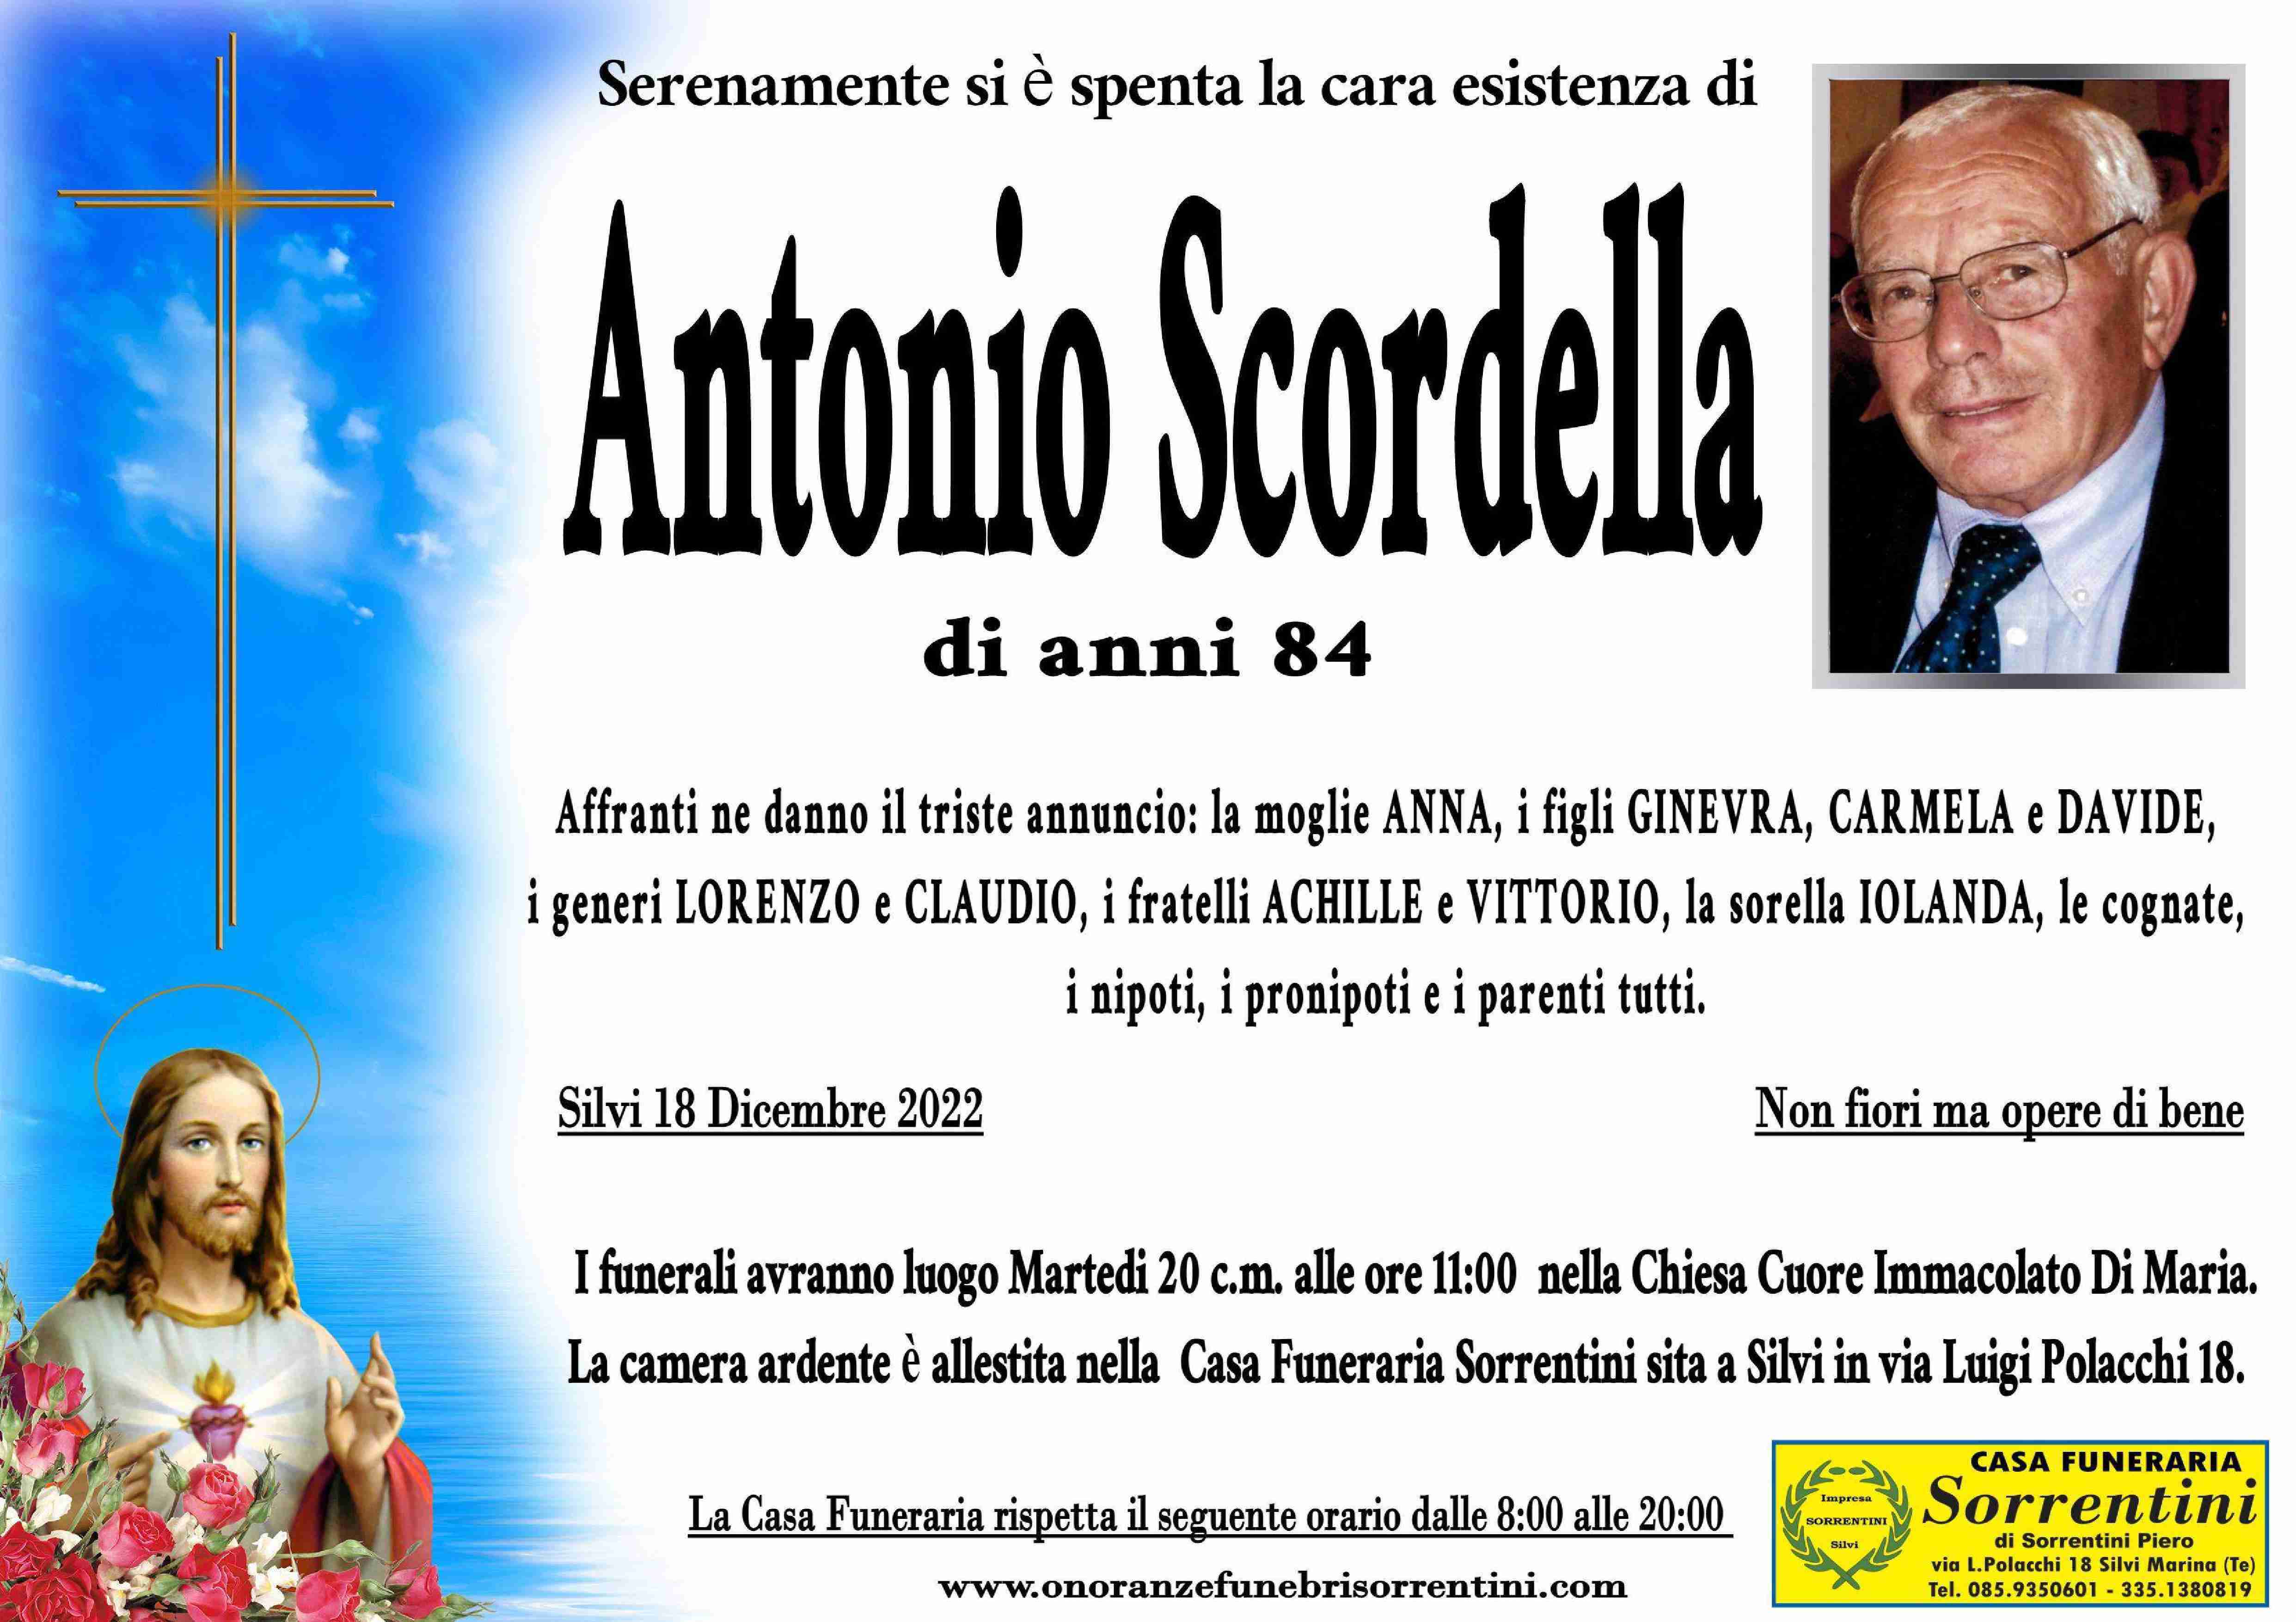 Antonio Scordella